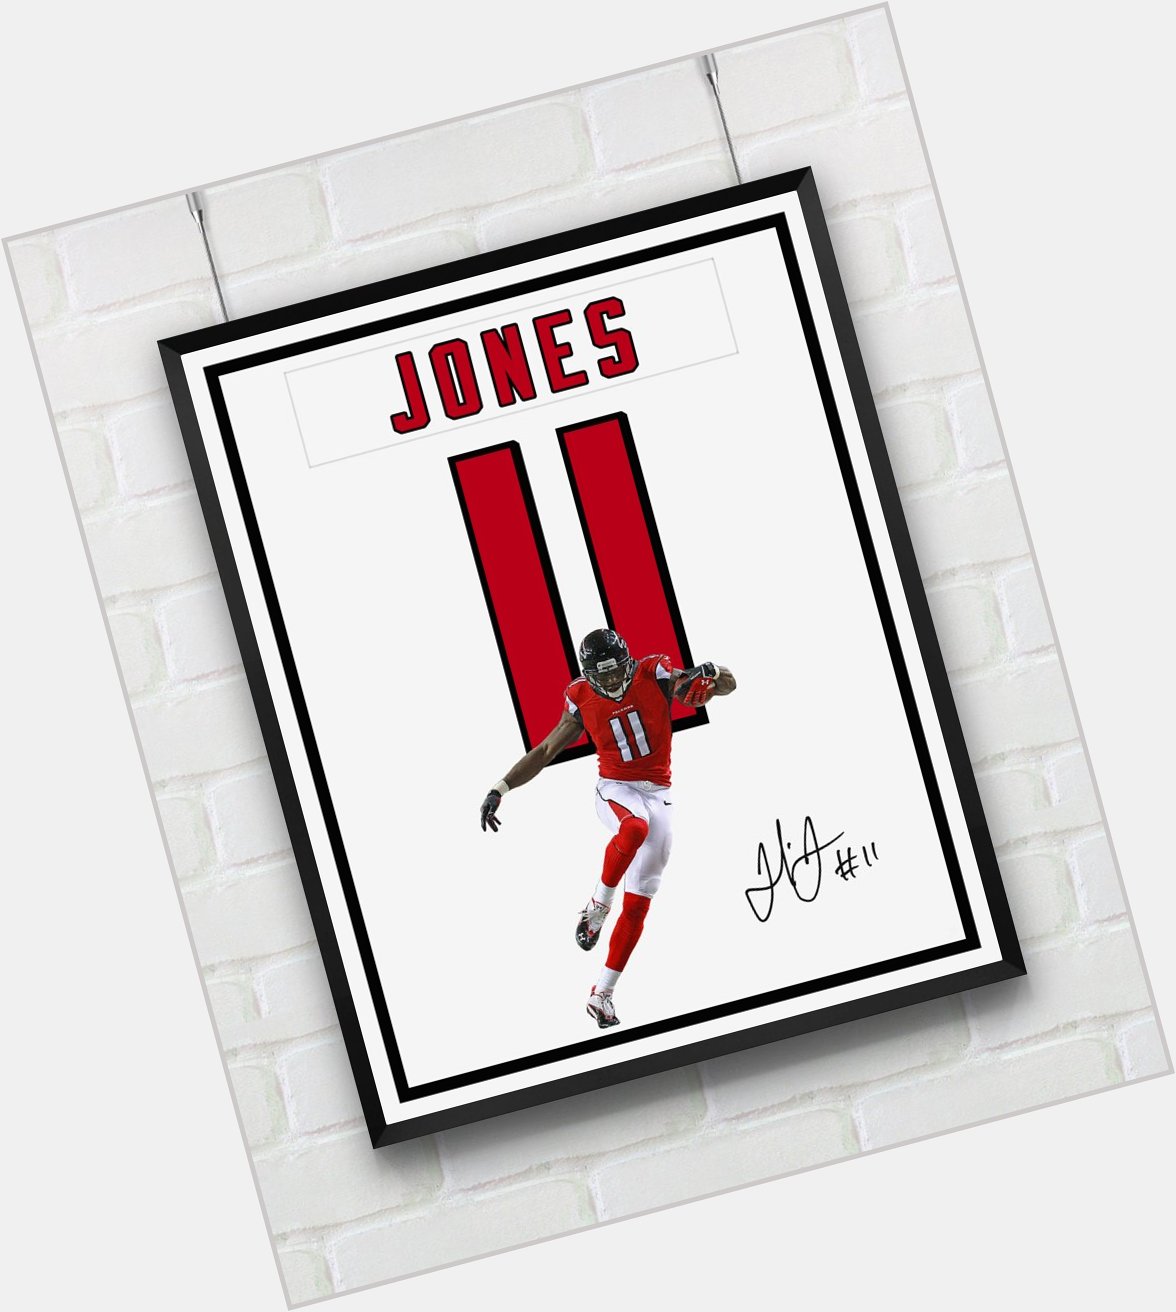 Happy Birthday Julio Jones!        